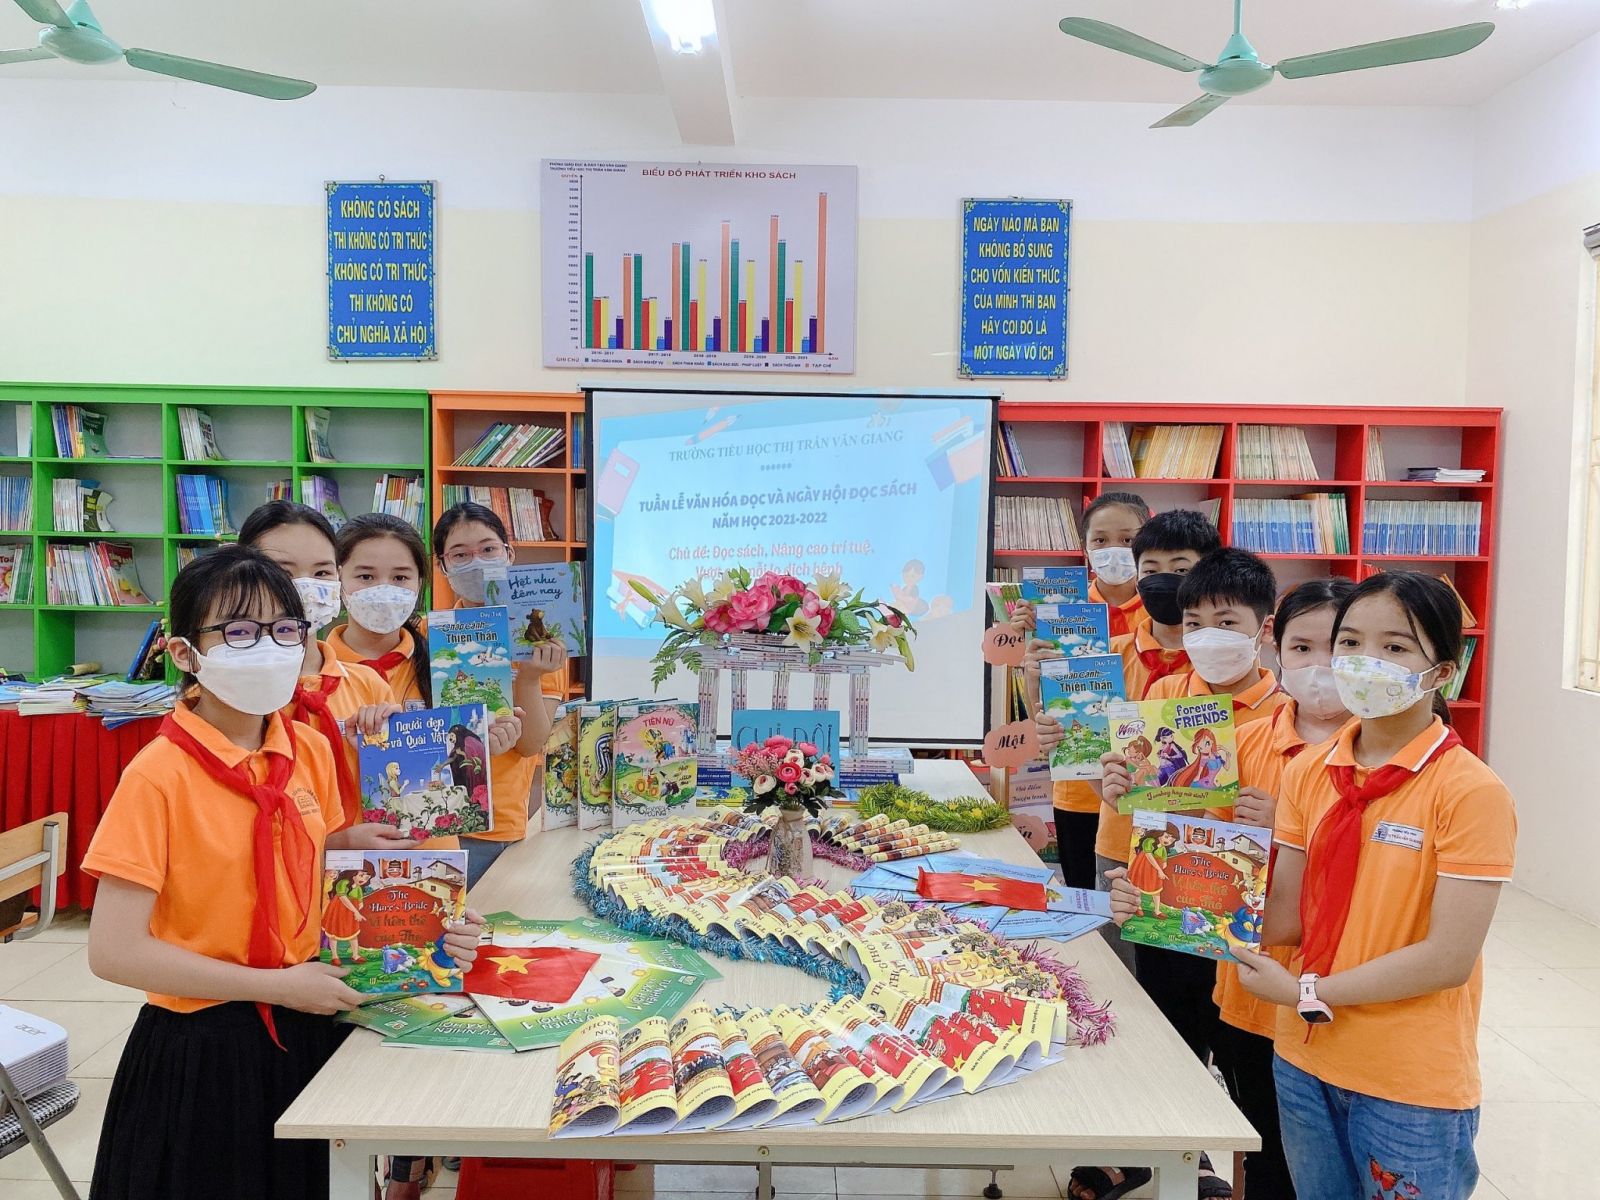 Huyện đoàn - Hội đồng Đội huyện Văn Giang chỉ đạo tổ chức Ngày hội đọc sách chủ đề “Tri thức cho em” tại Liên đội trường THCS Thị trấn Văn Giang.